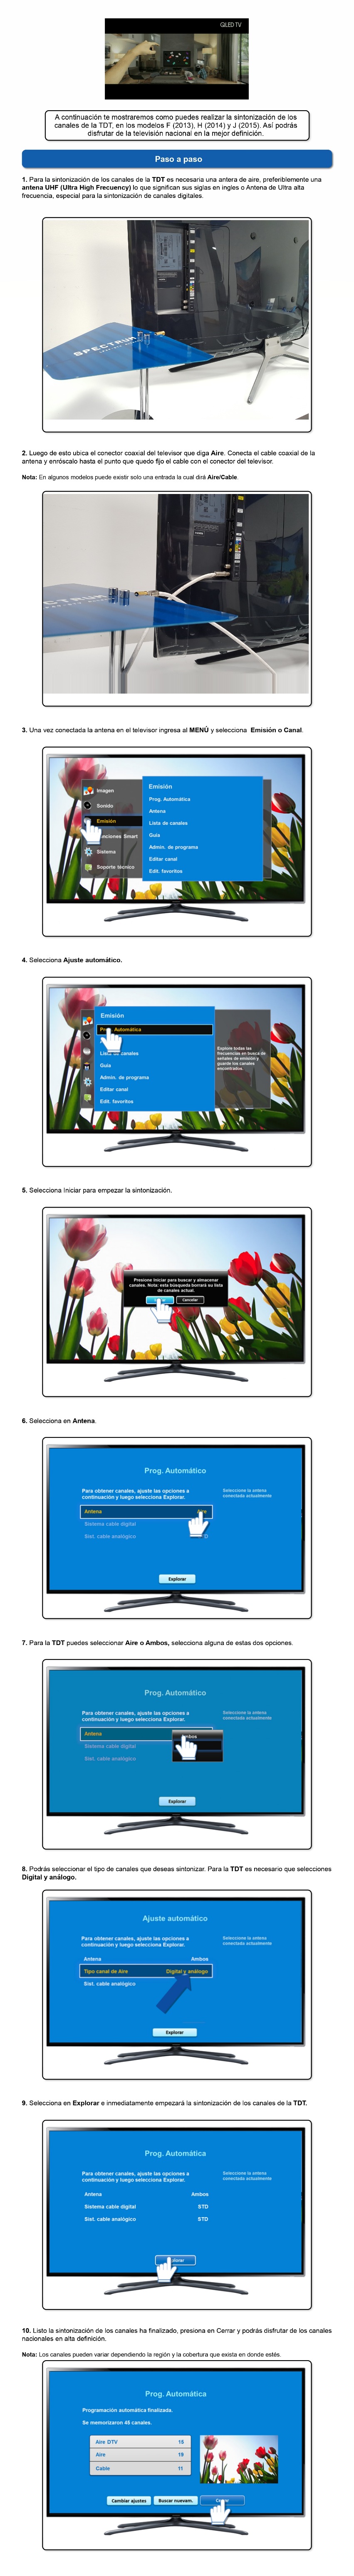 Guía completa: Cómo ver TDT en Smart TV Samsung sin antena - Explicación  paso a paso - 💙 ME GUSTA INTERNET